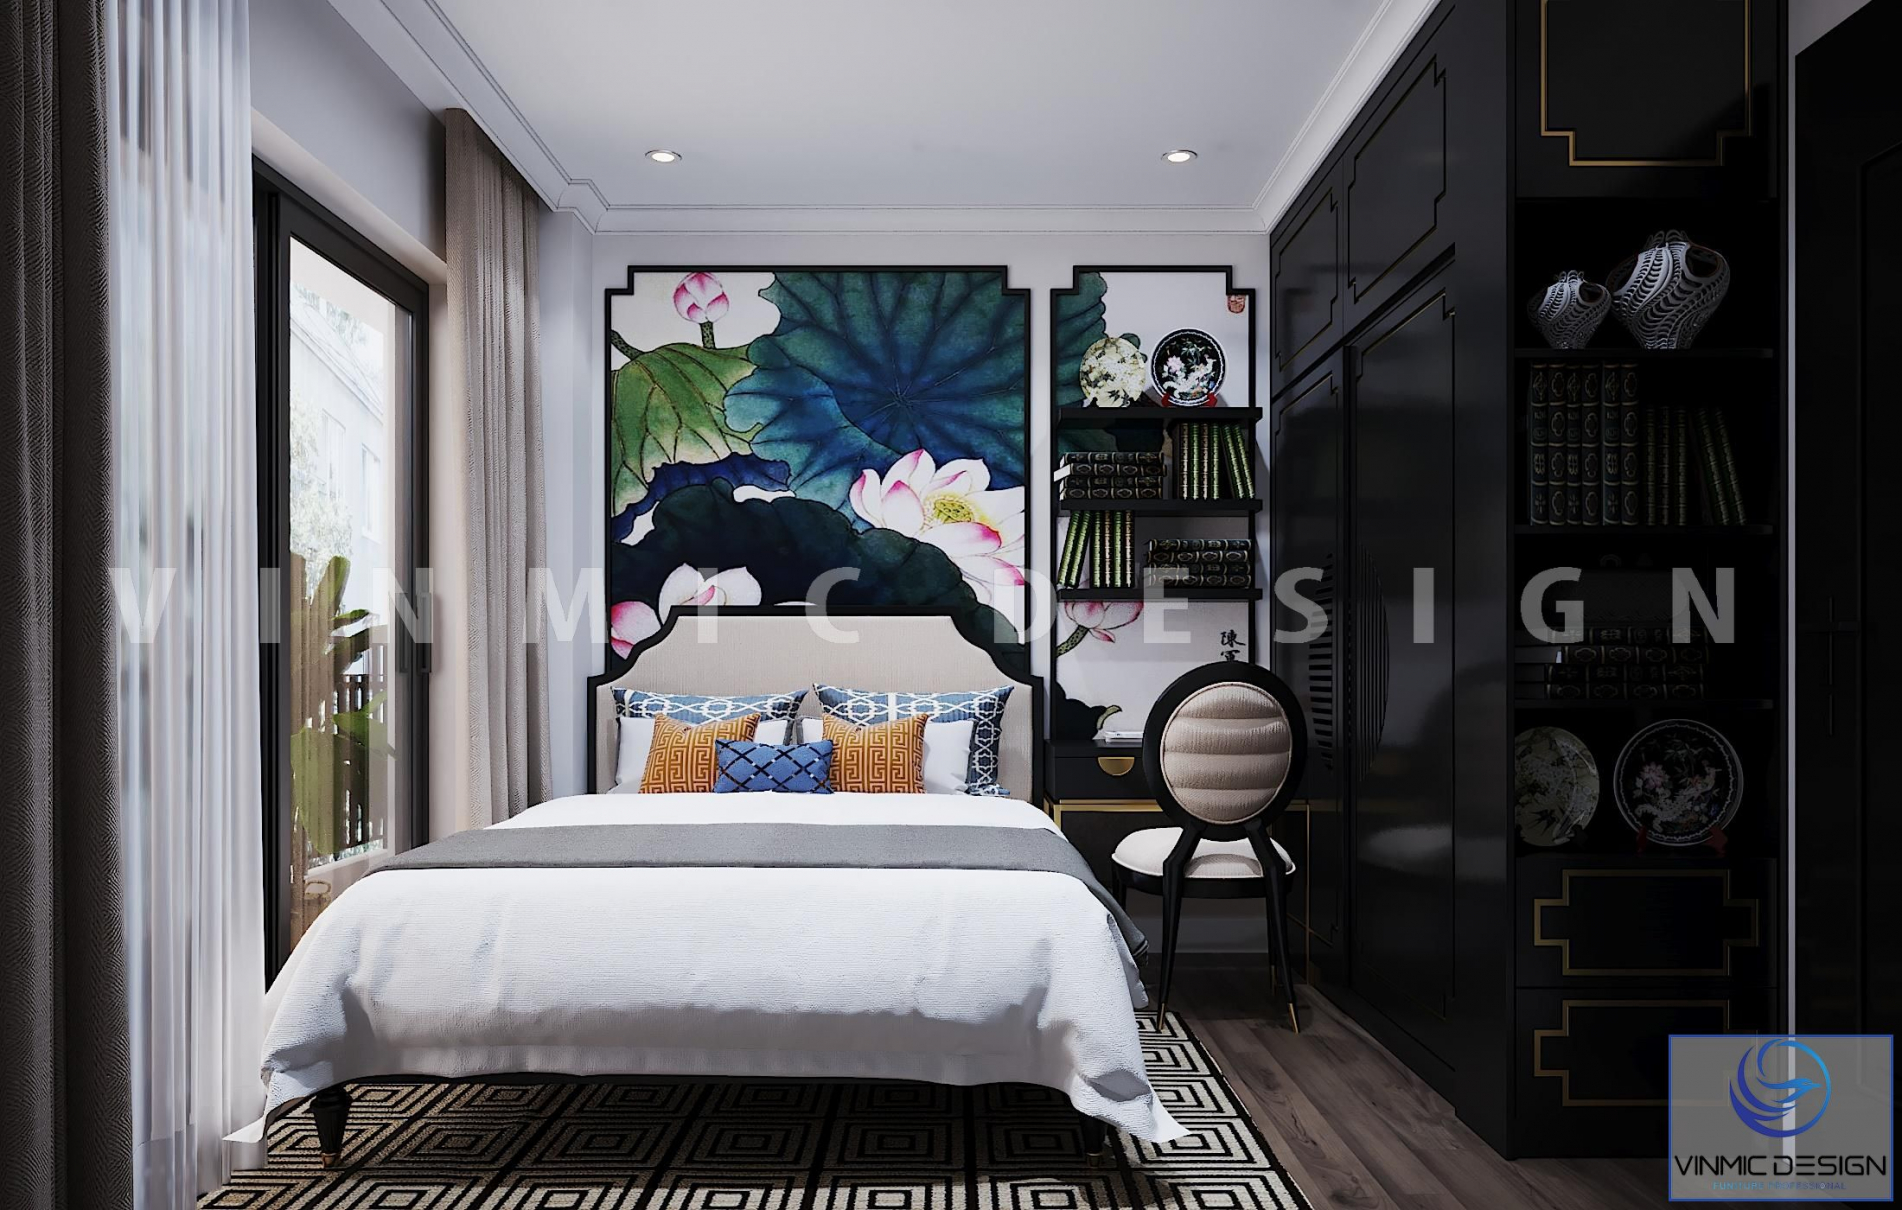  Thiết kế nội thất phong cách Indochine cho phòng ngủ.
